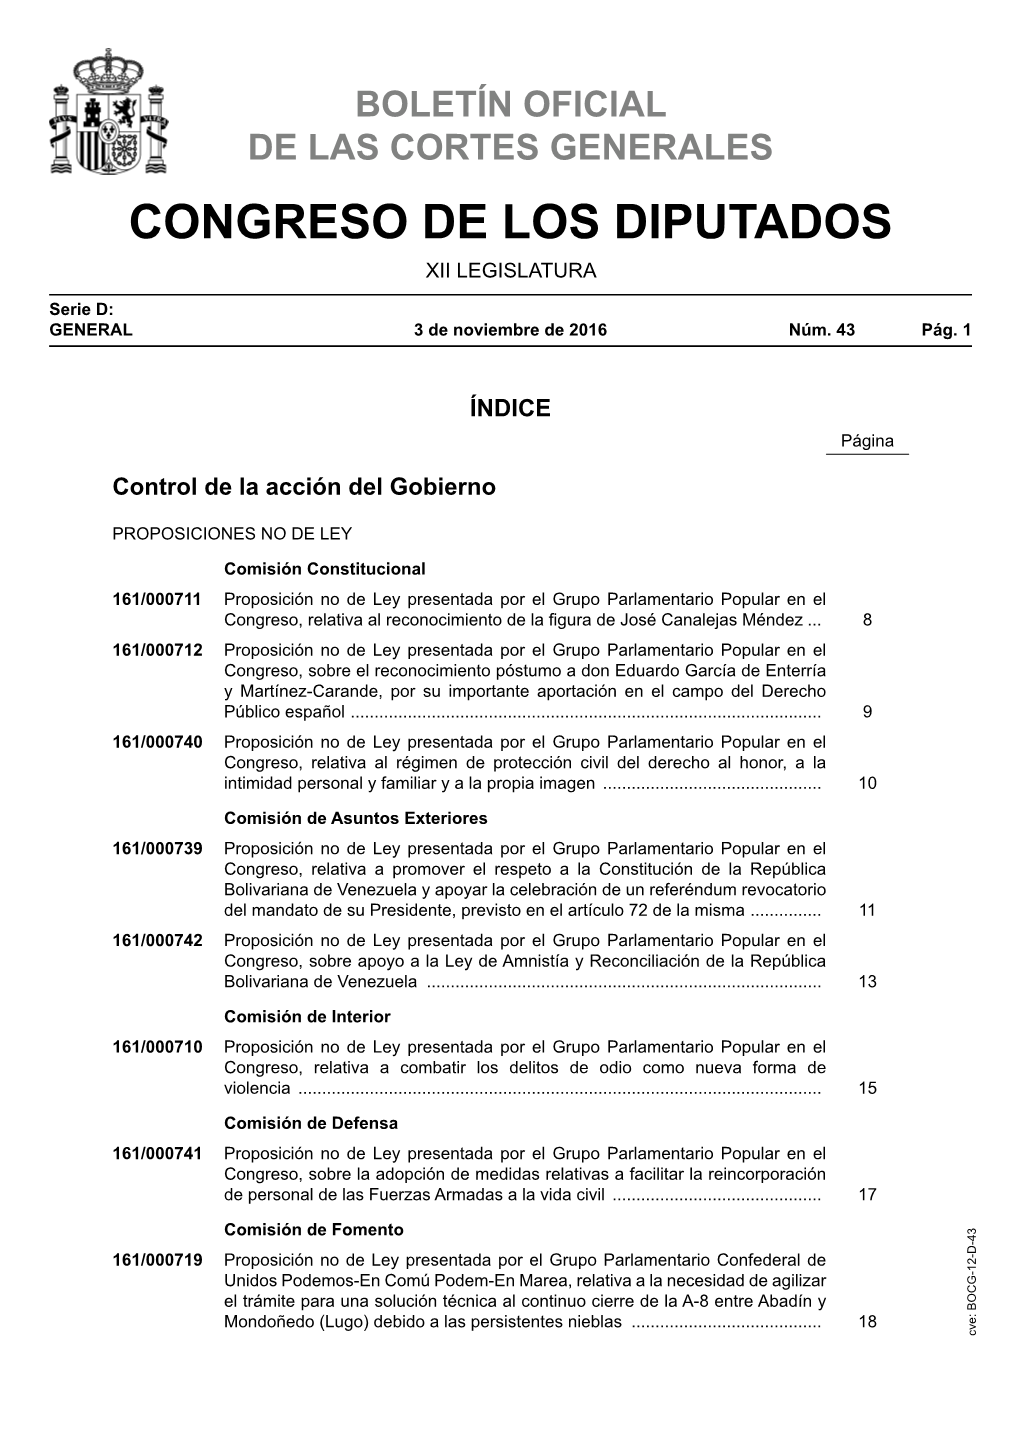 Boletín Oficial De Las Cortes Generales Serie D: General